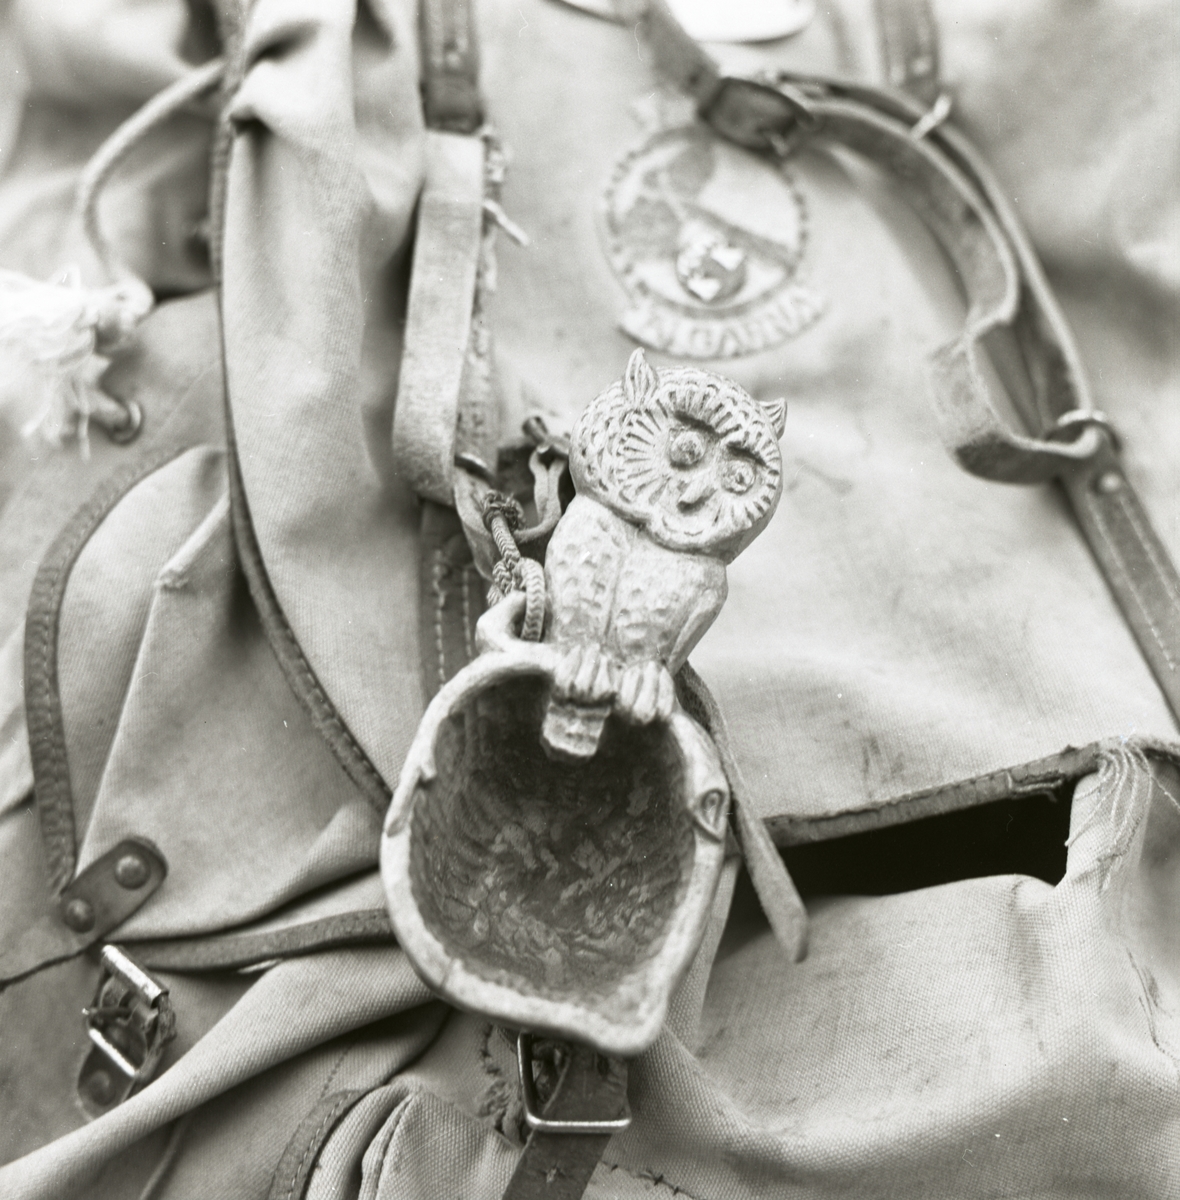 En ryggsäck med en uggla samt en kåsa fastsatt i en av remmarna.